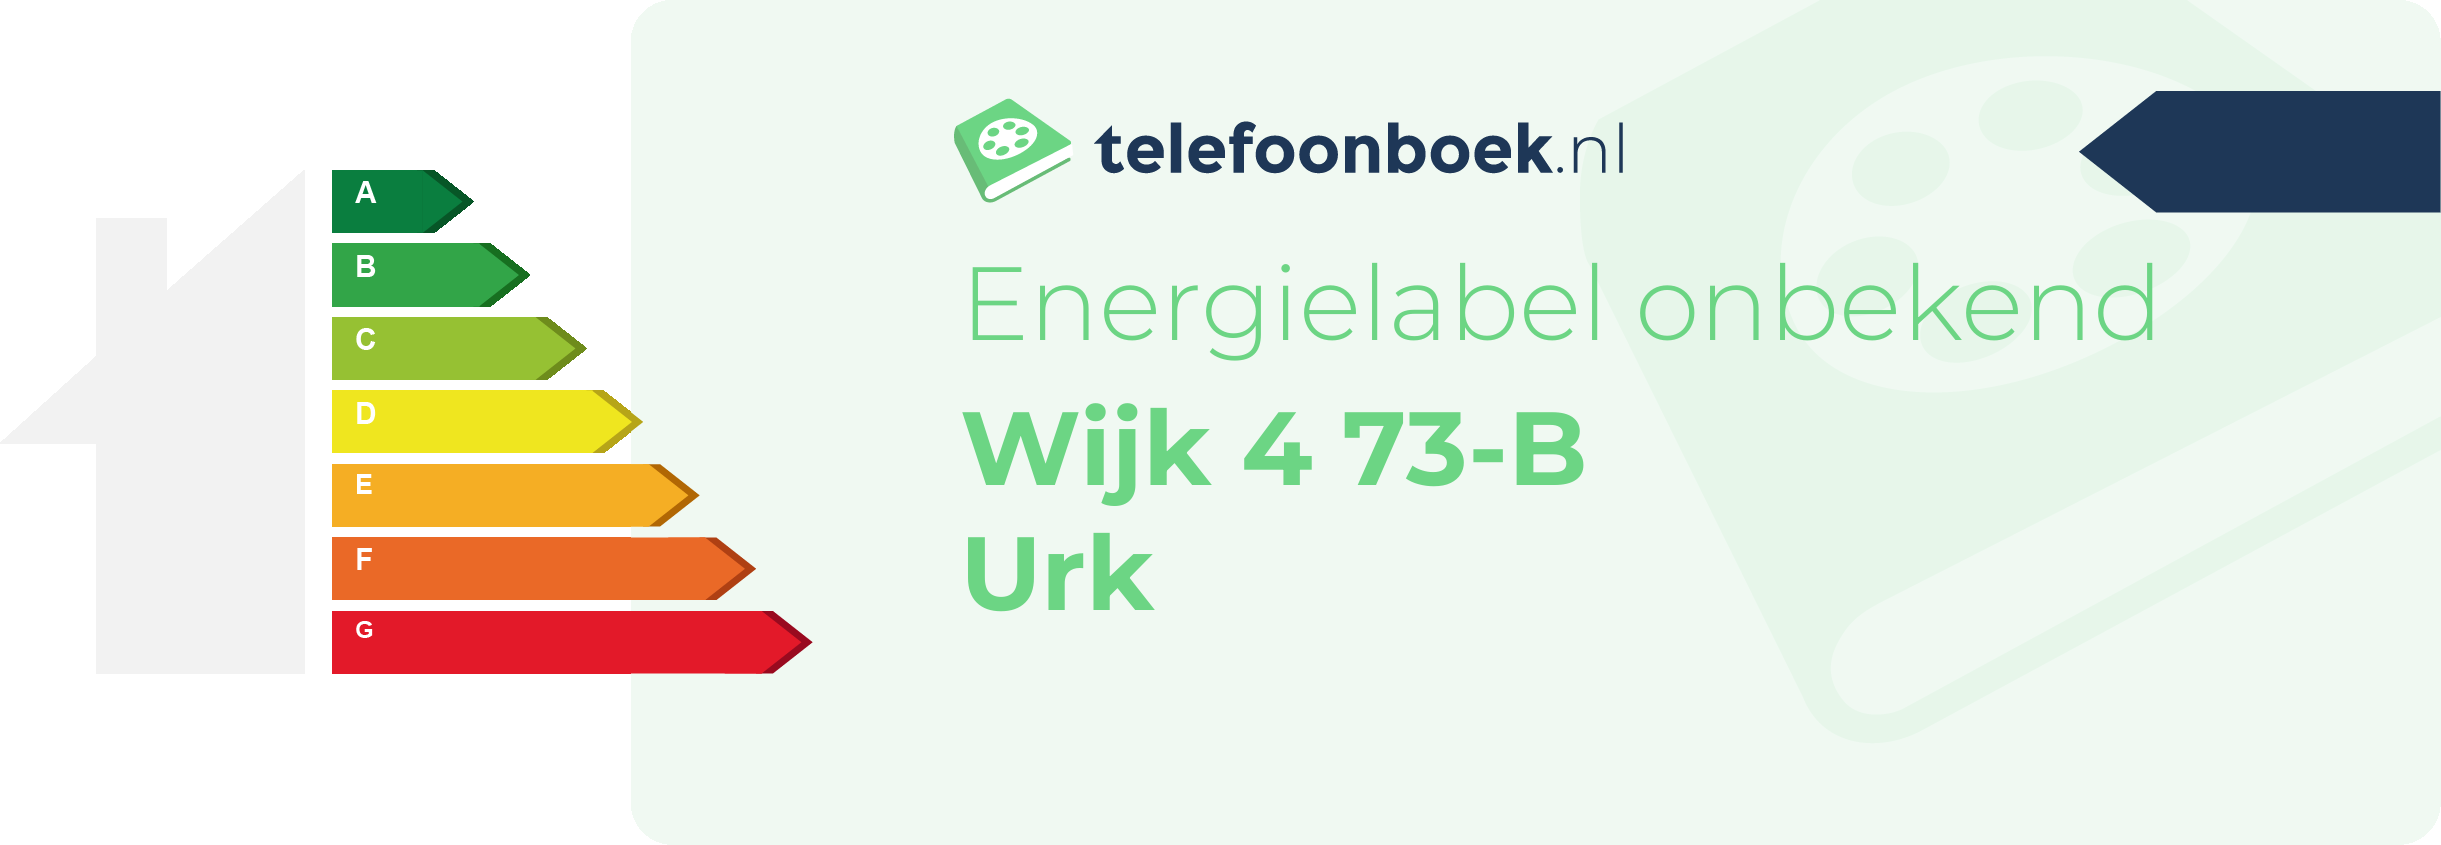 Energielabel Wijk 4 73-B Urk